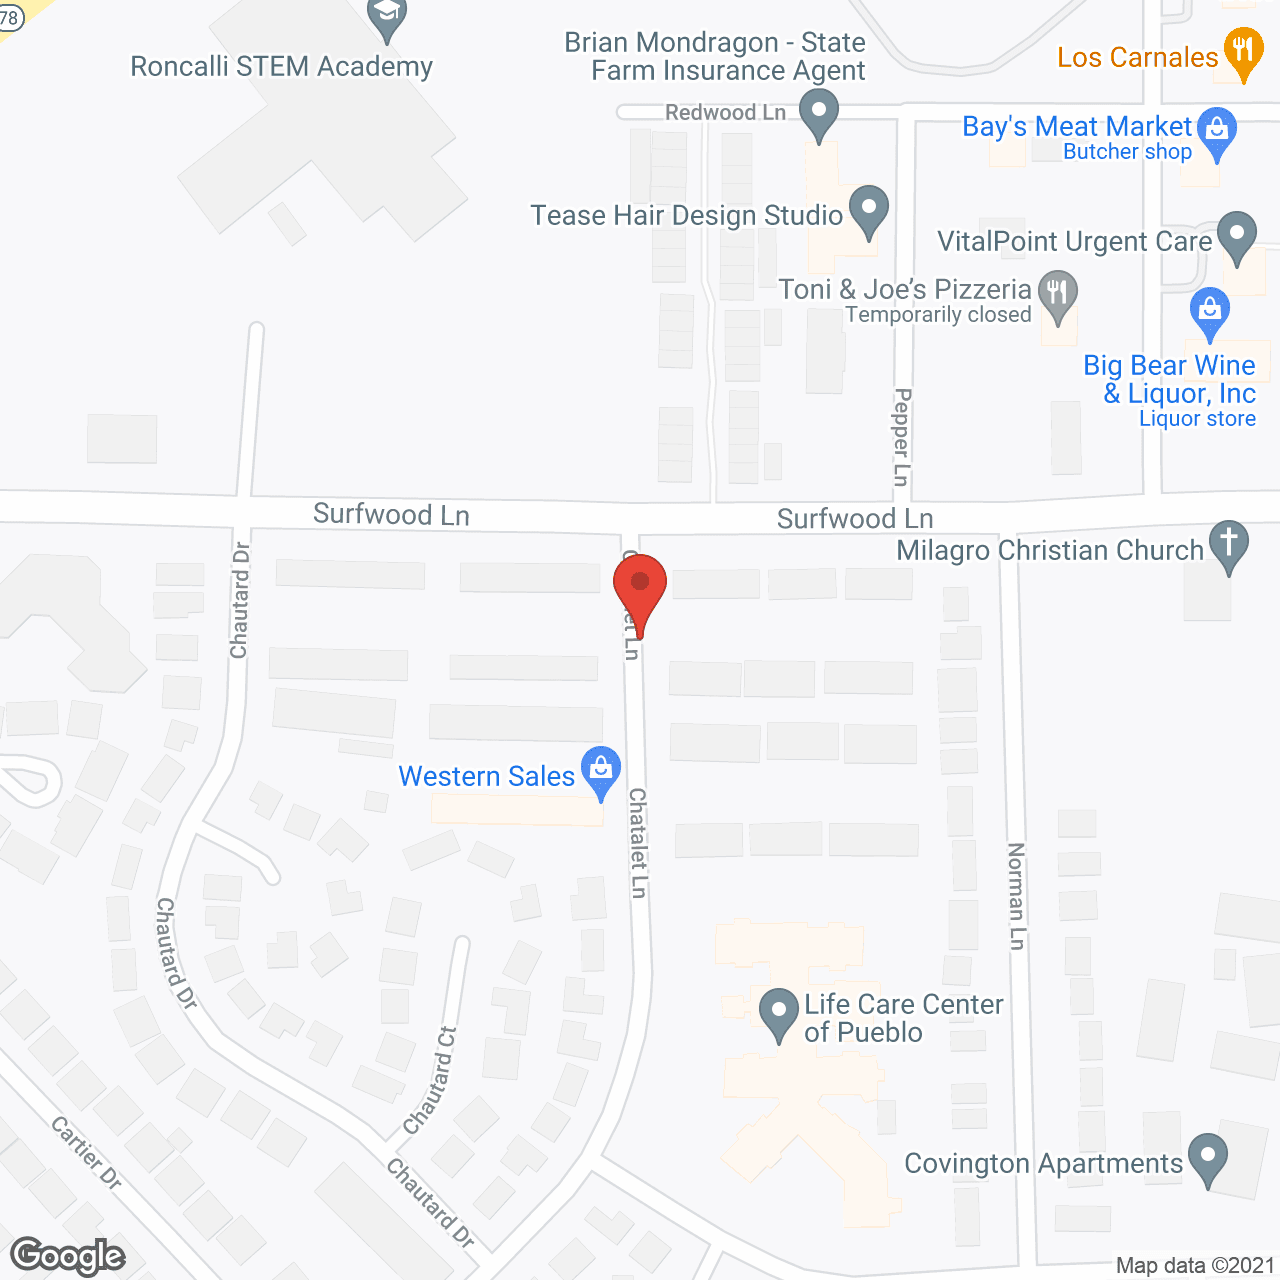 Life Care Center of Pueblo in google map